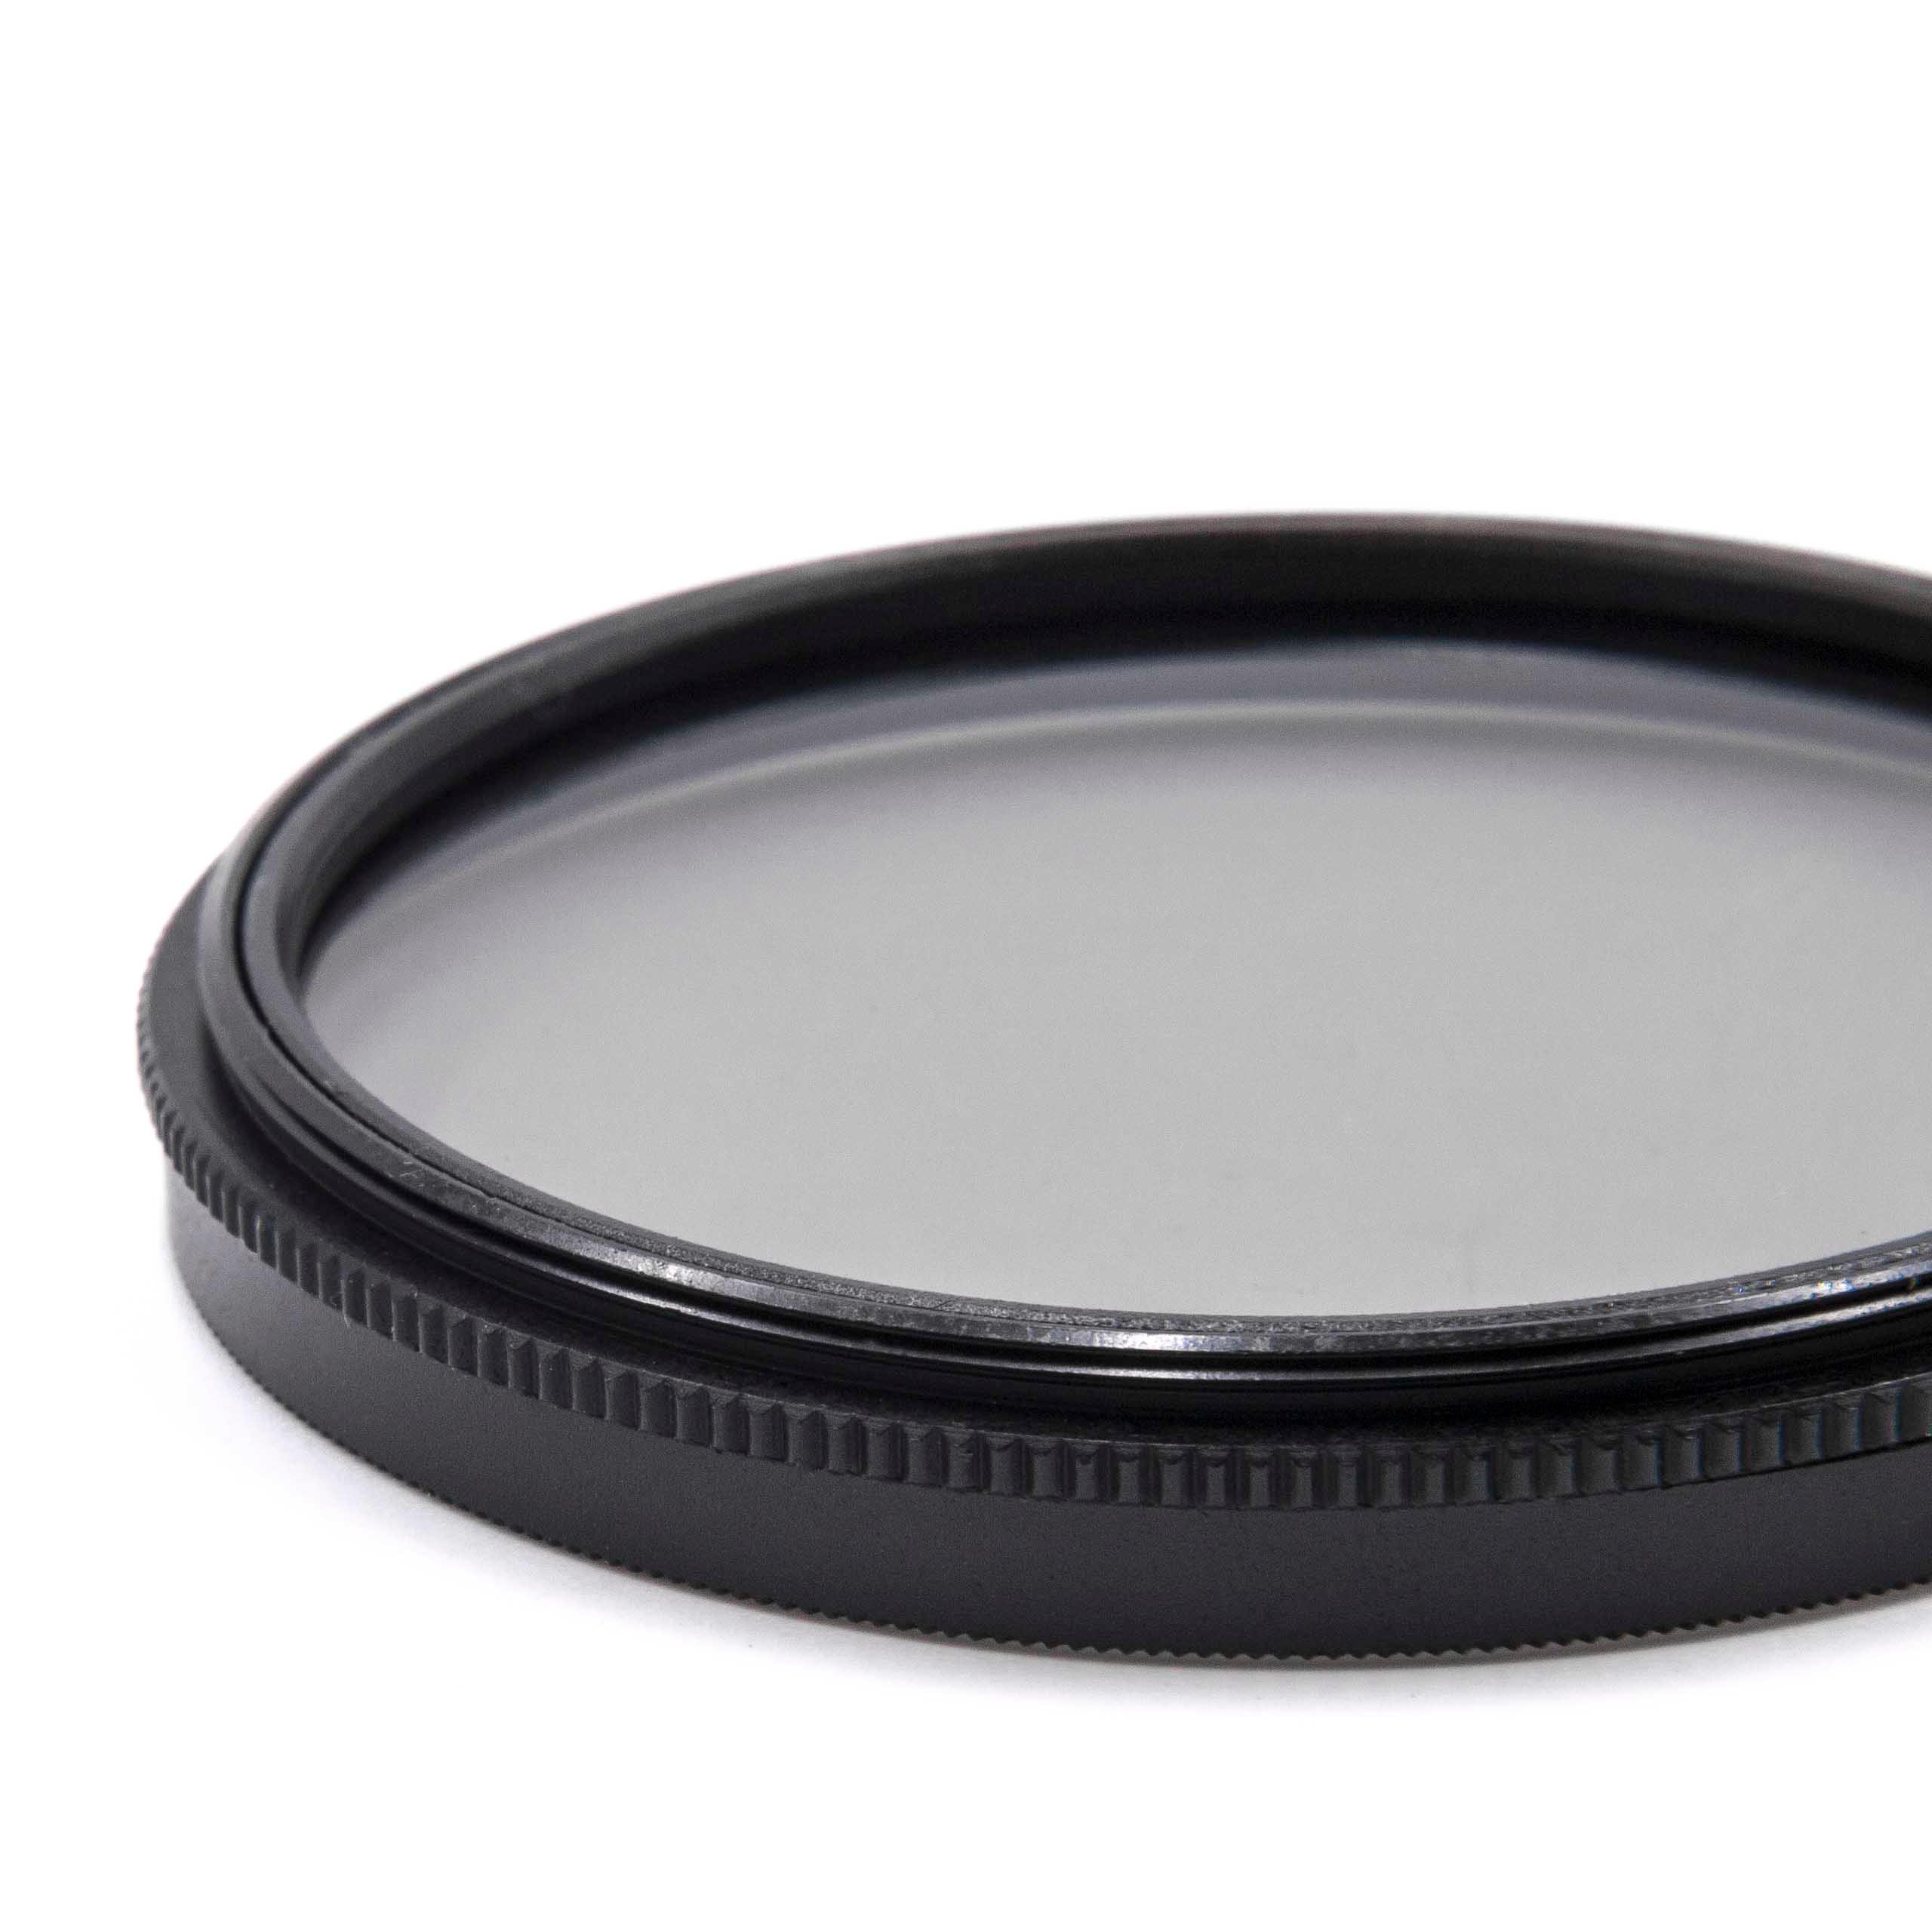 Filtr polaryzacyjny 55mm do różnych obiektywów aparatów - filtr CPL 